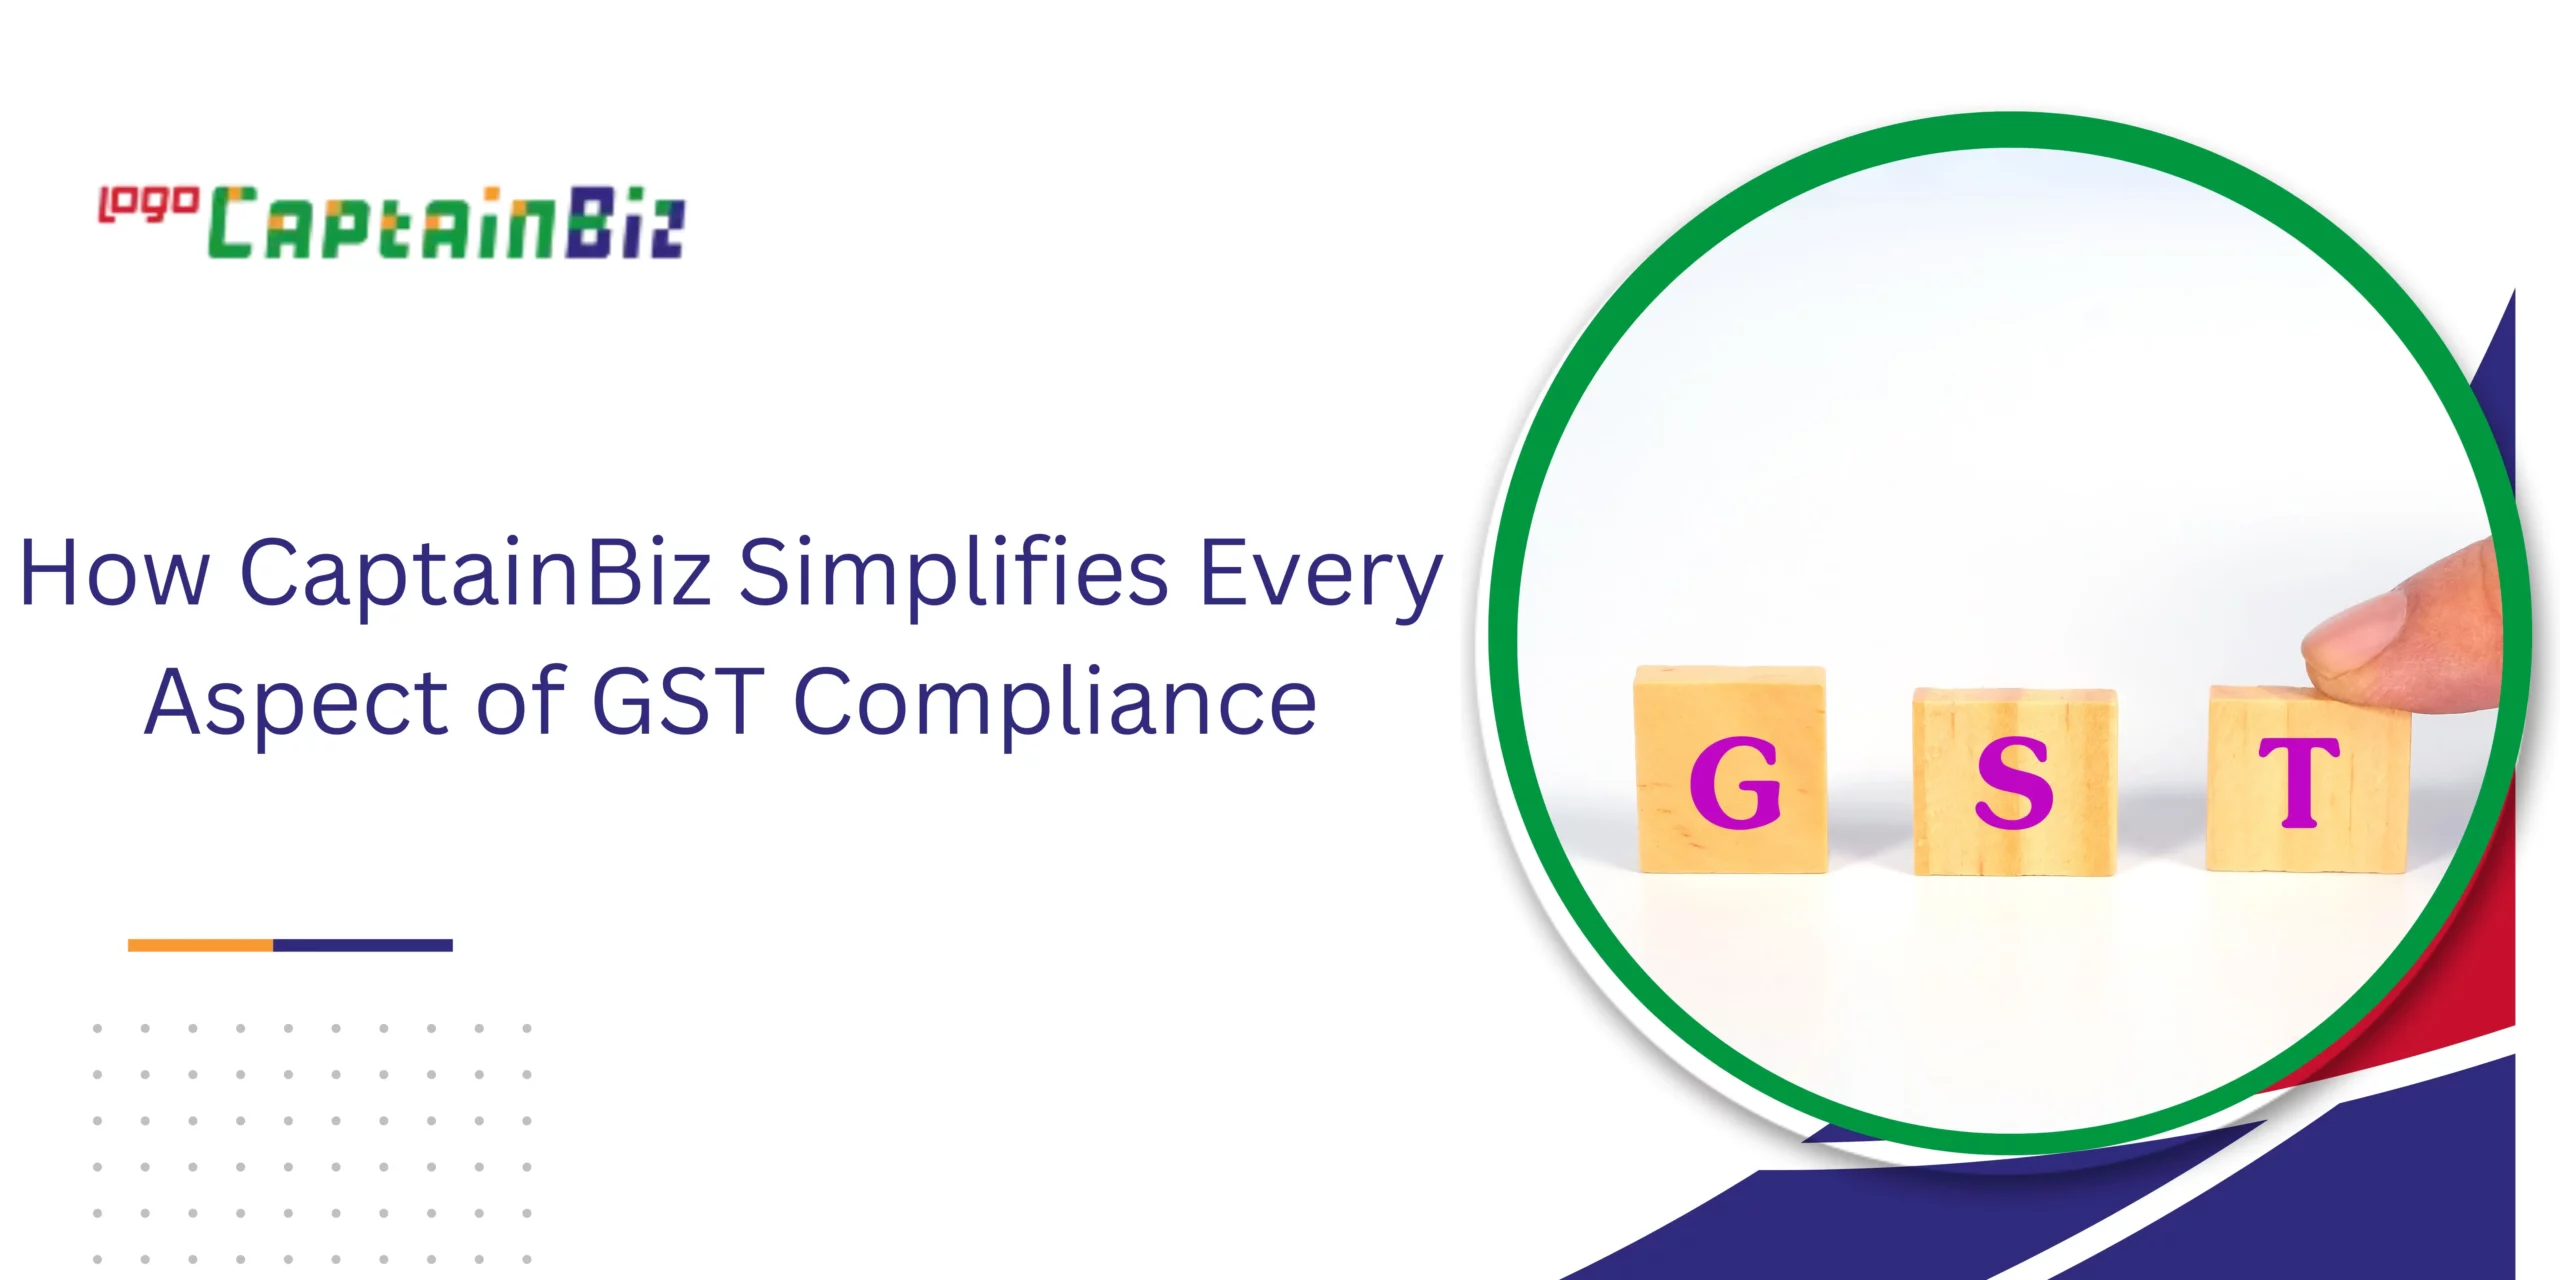 CaptainBiz: How CaptainBiz Simplifies Every Aspect of GST Compliance